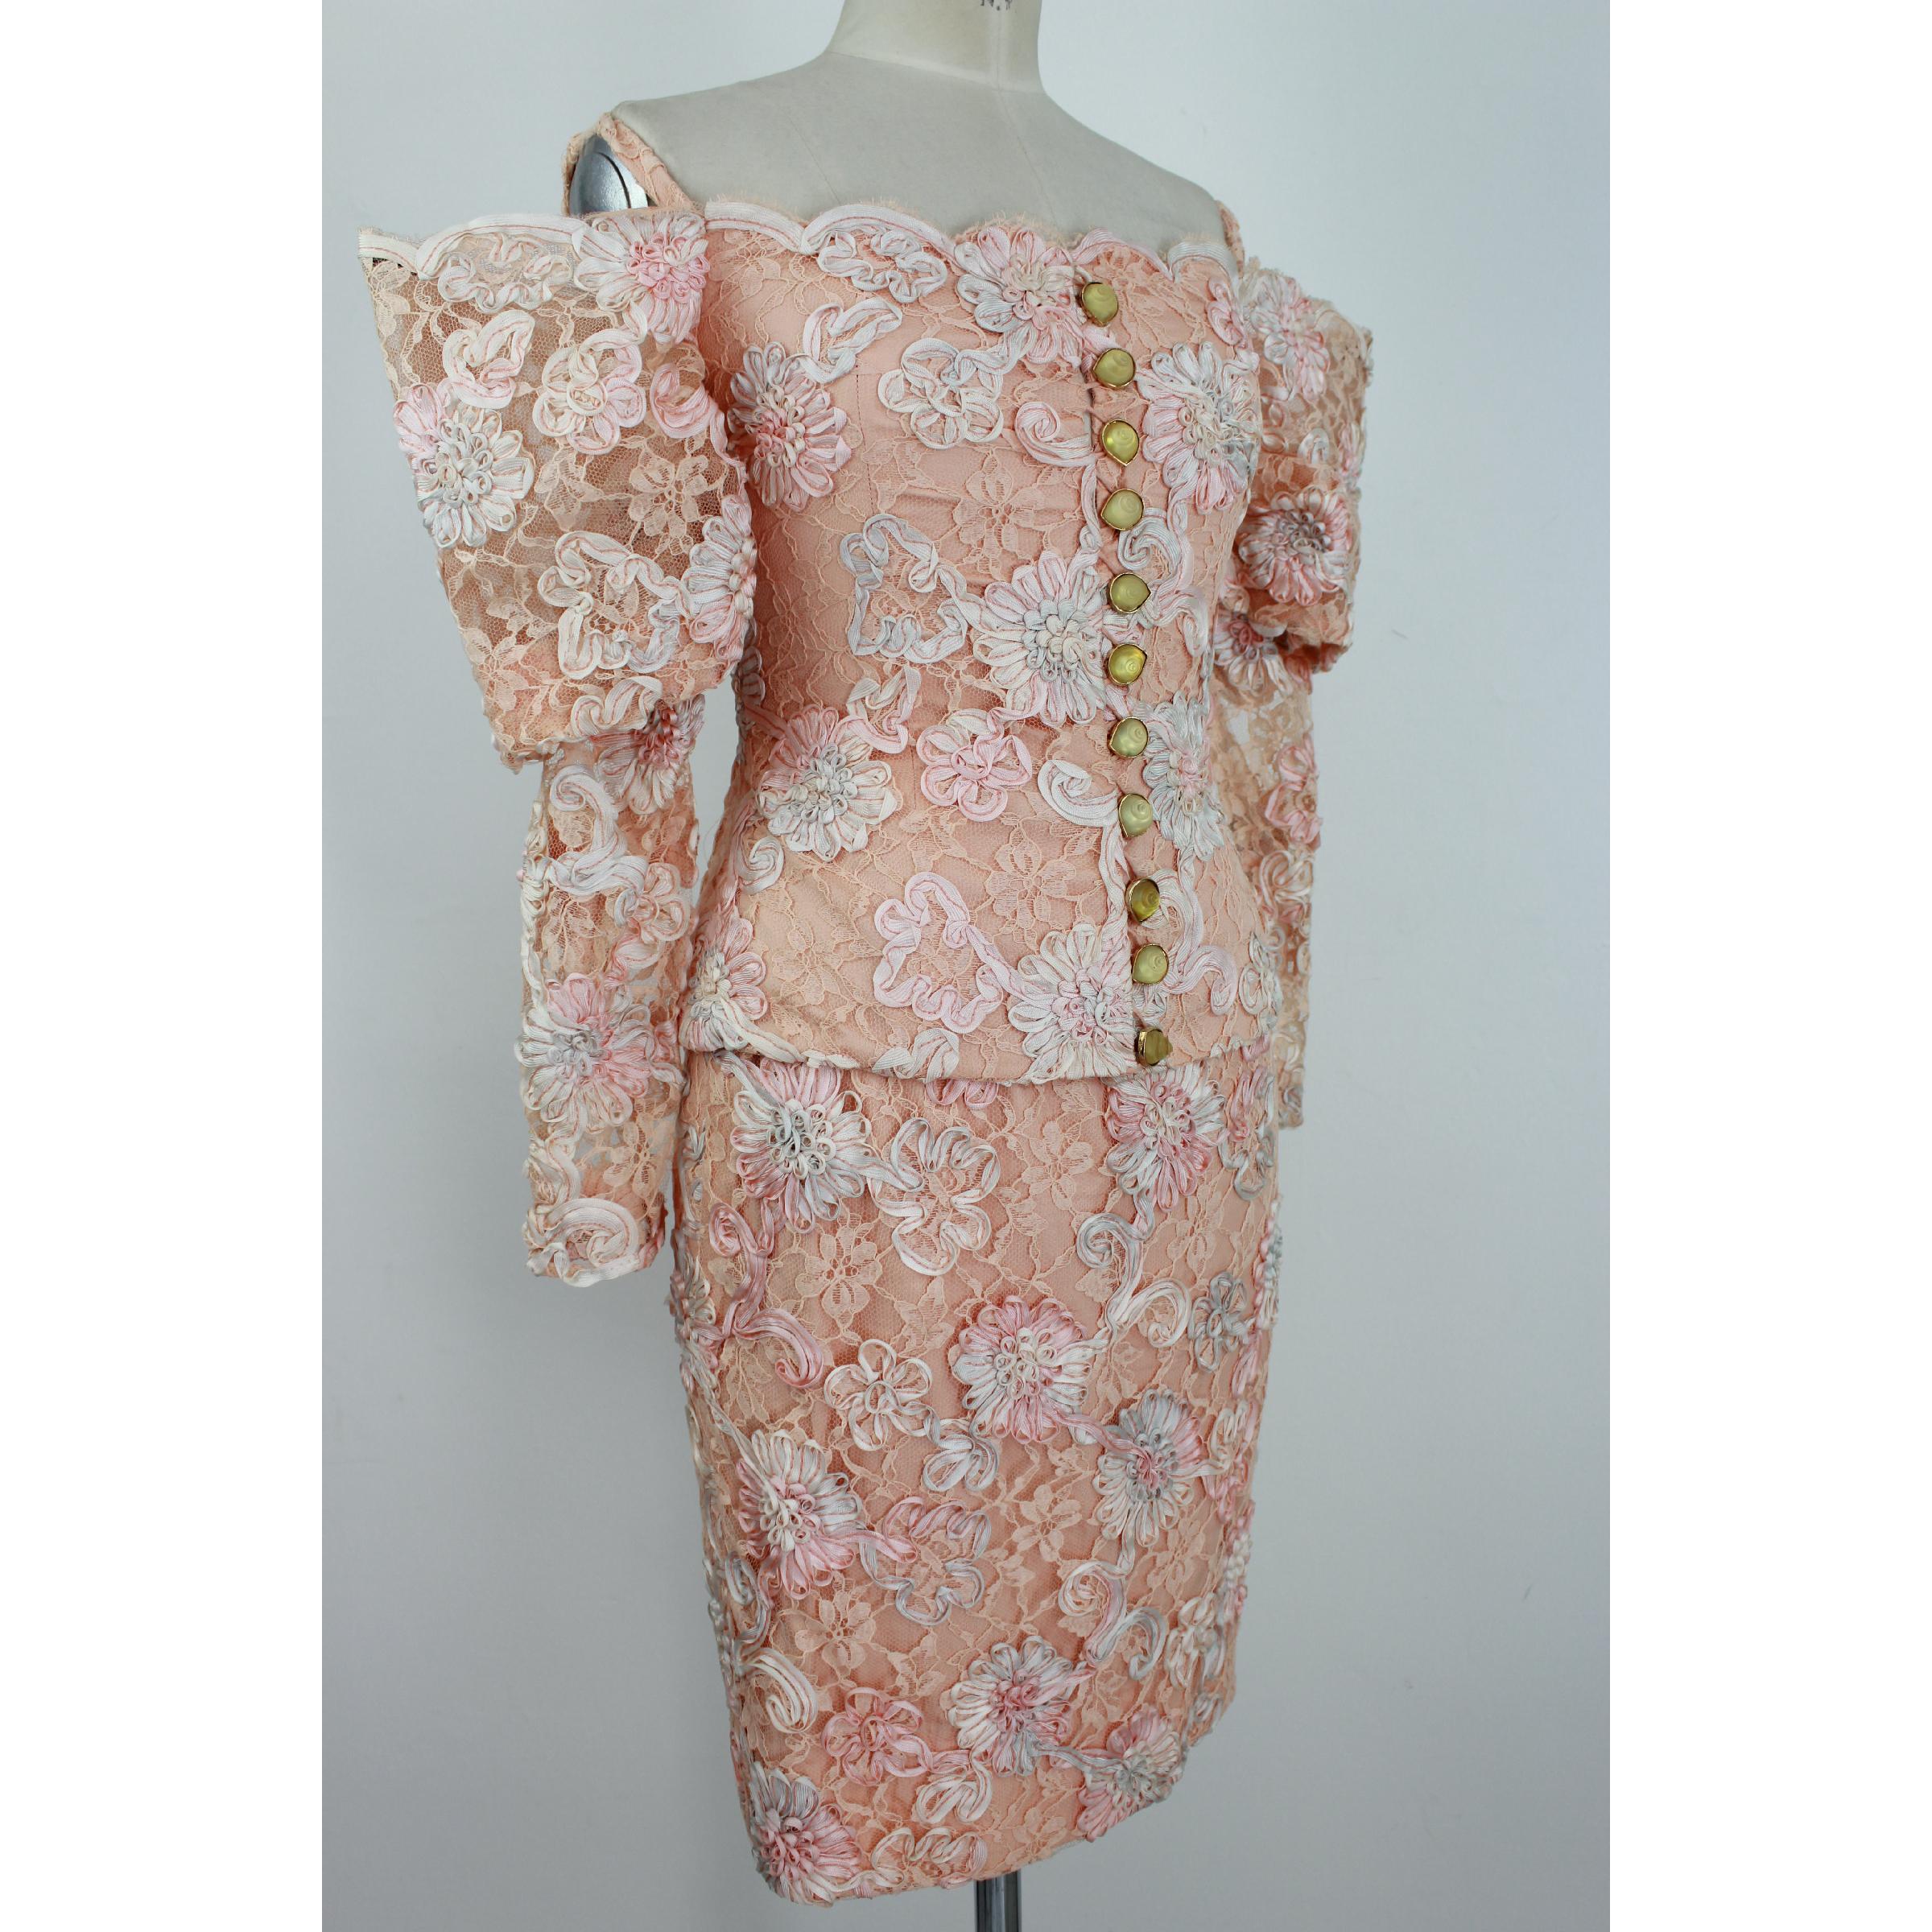 Brown 1970s Lanvin Pink Floral Lace Embroidered Formal Dress Set Skirt Jacket